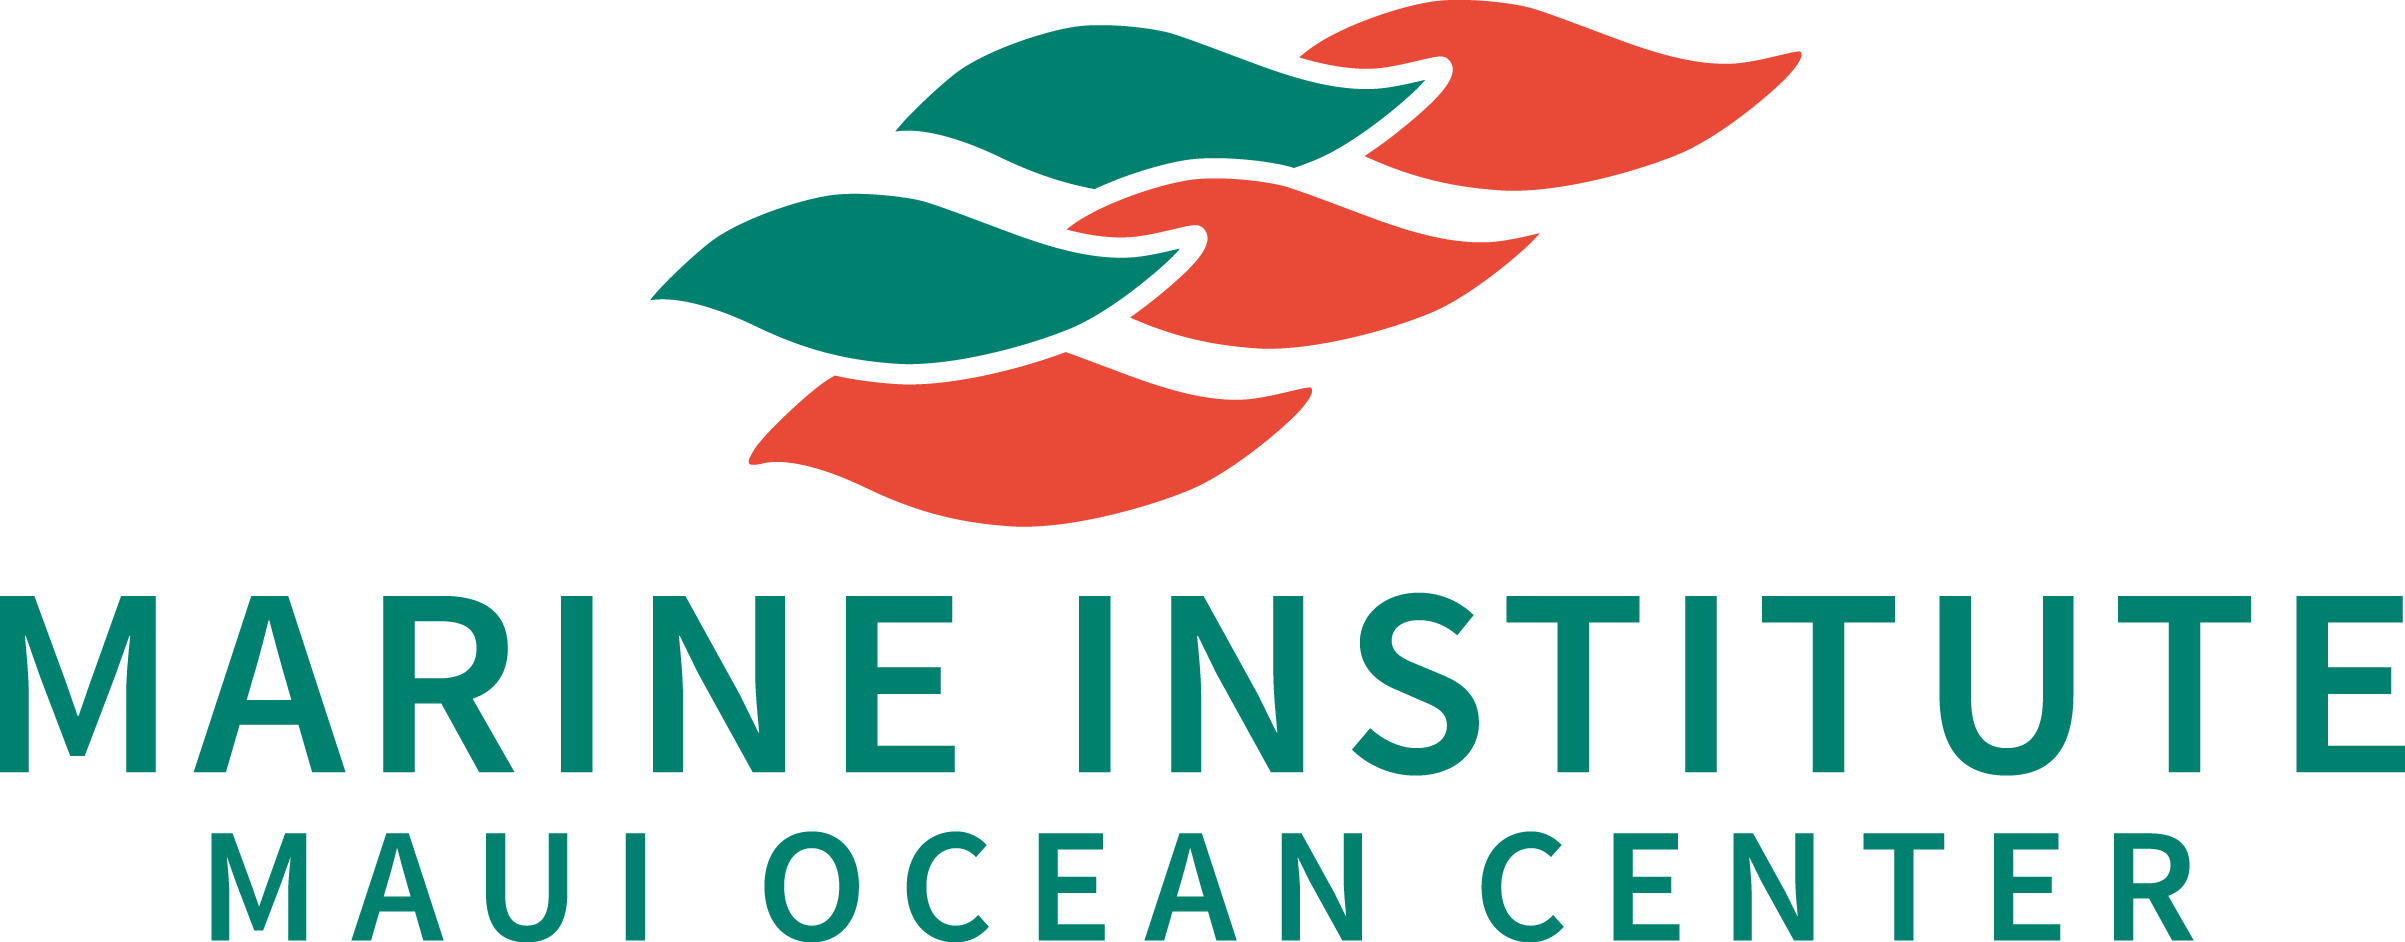 Maui Ocean Center Marine Institute logo